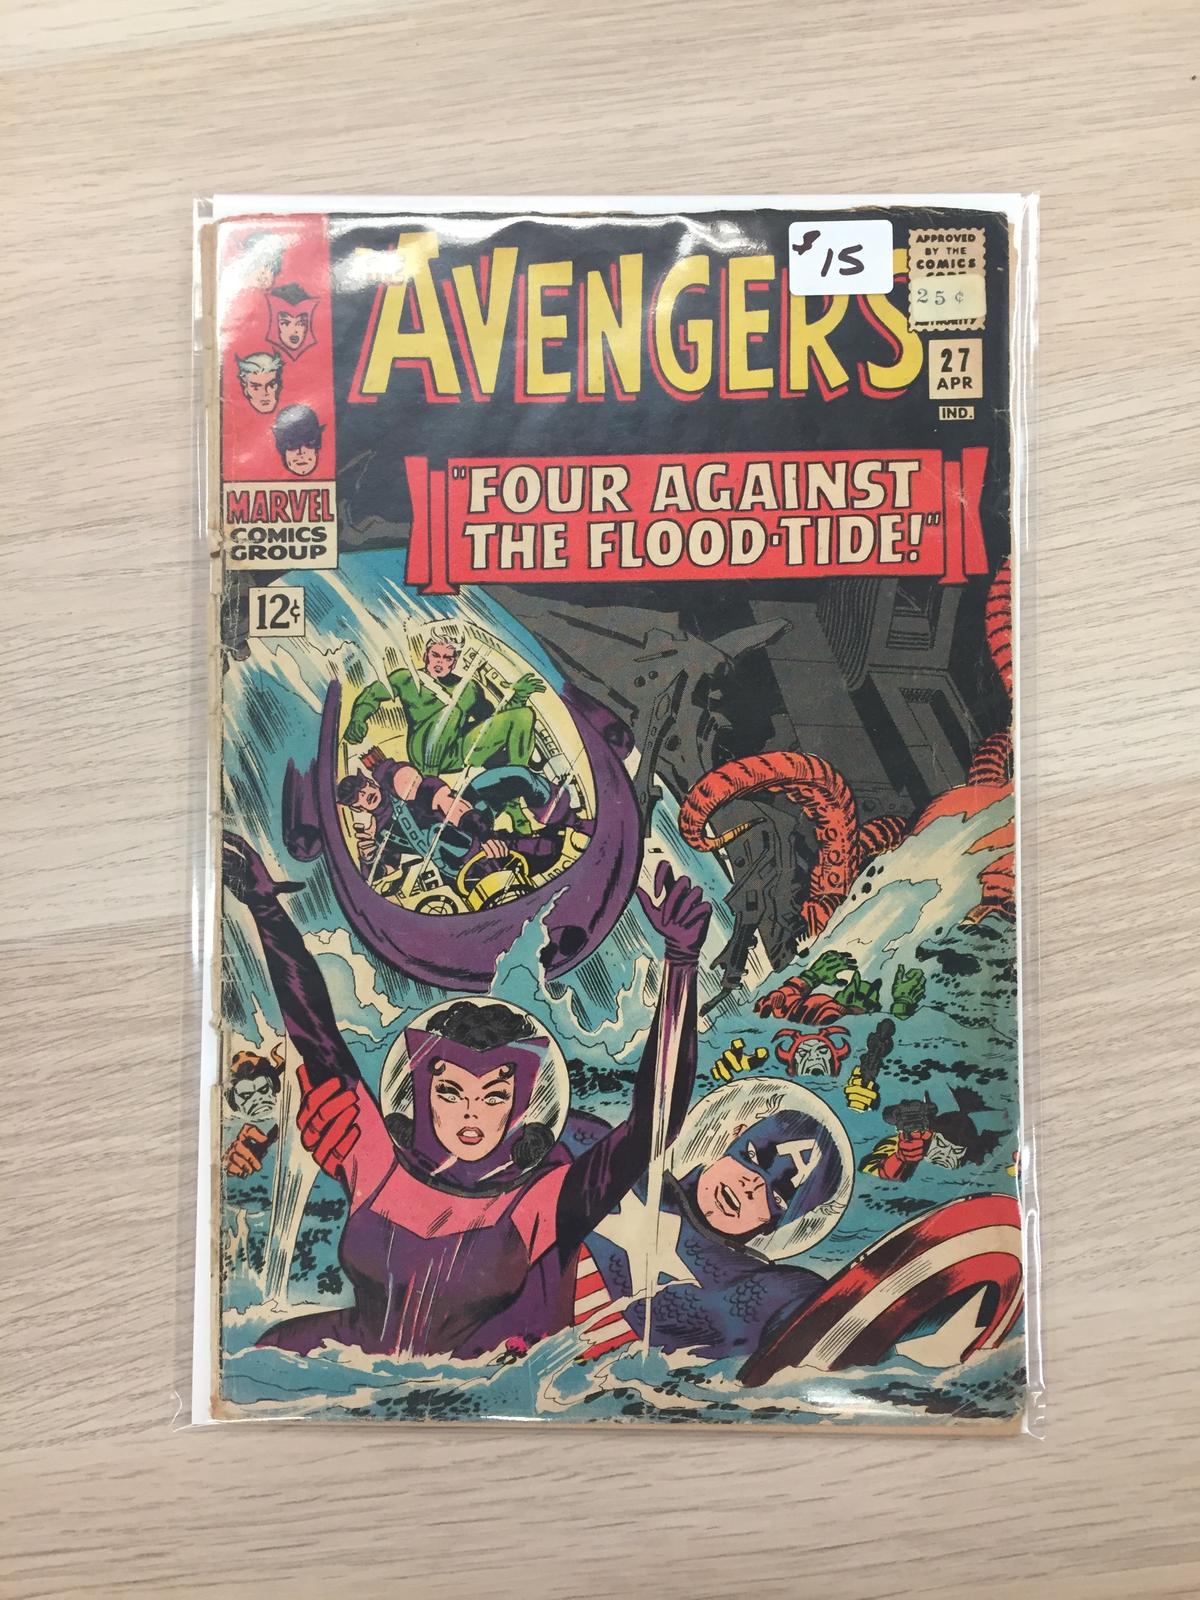 The Avengers #27 - Marvel Comic Book